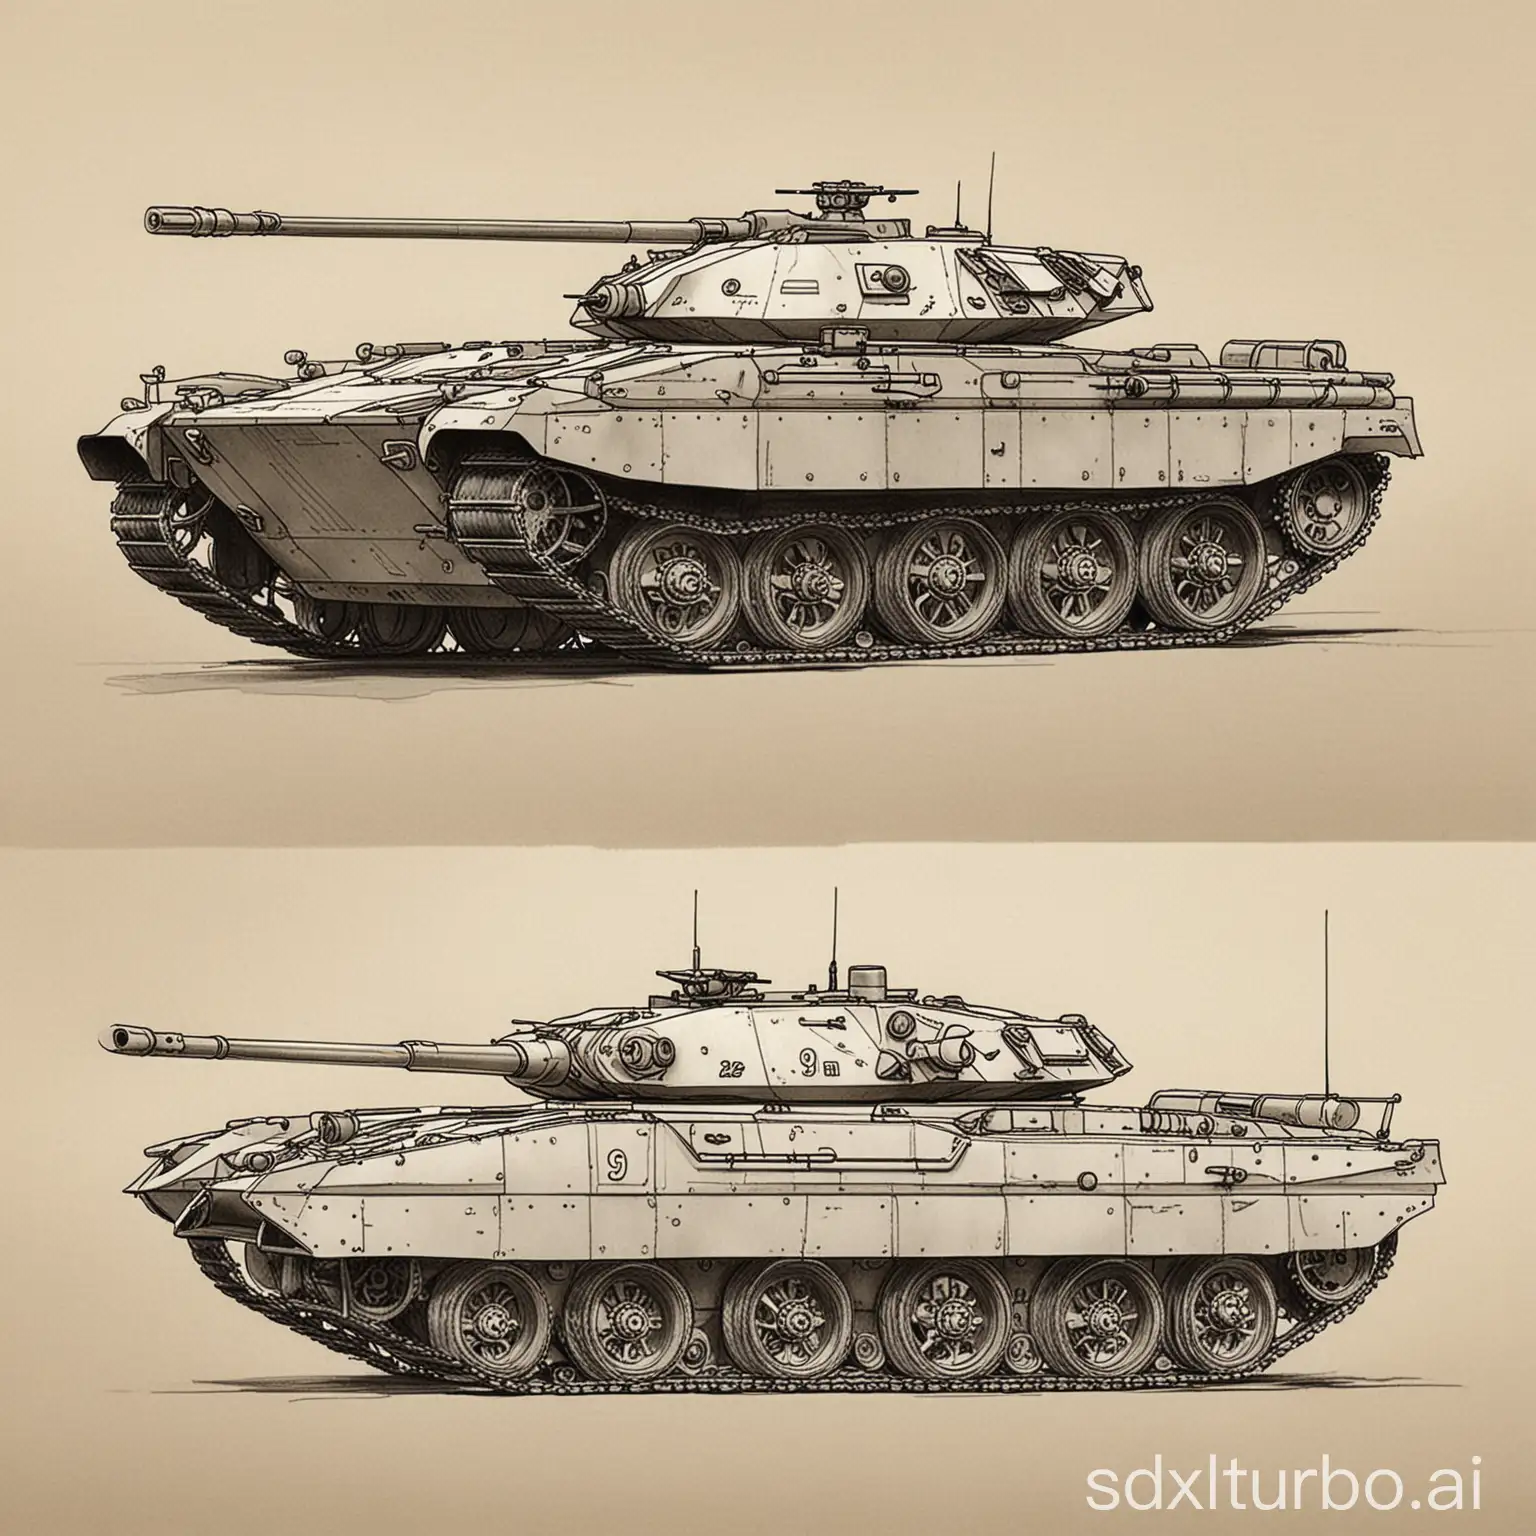 简笔画描绘的99式坦克外形简单明了，展示出其坚固和威武的形象。